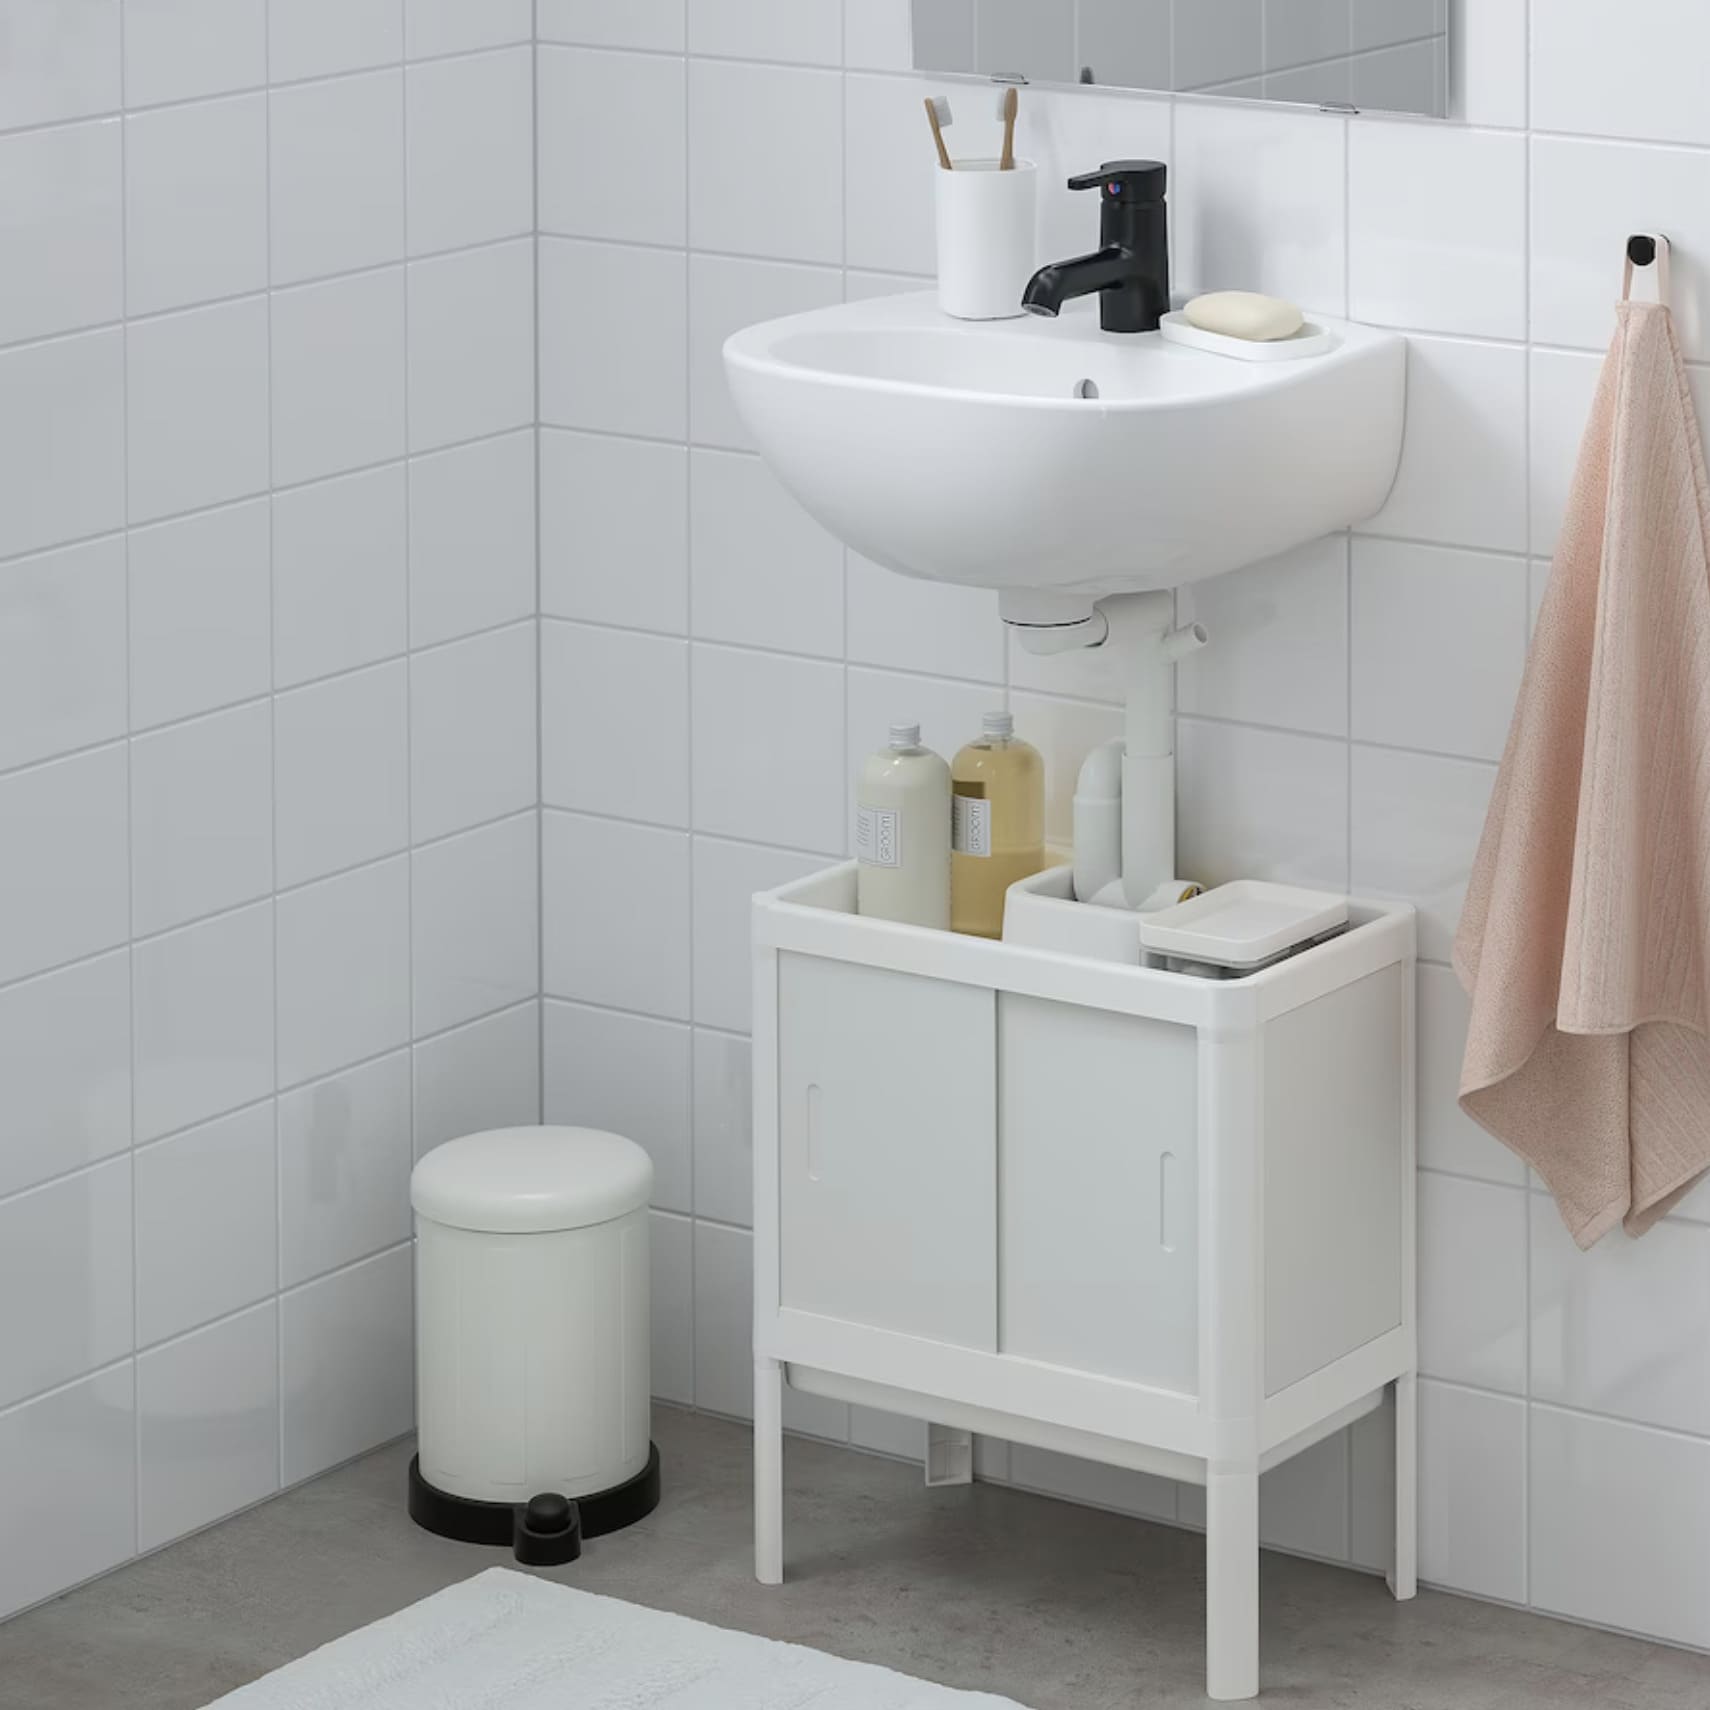 IKEA tiene la solución de almacenaje para tu baño, se acabó el desorden